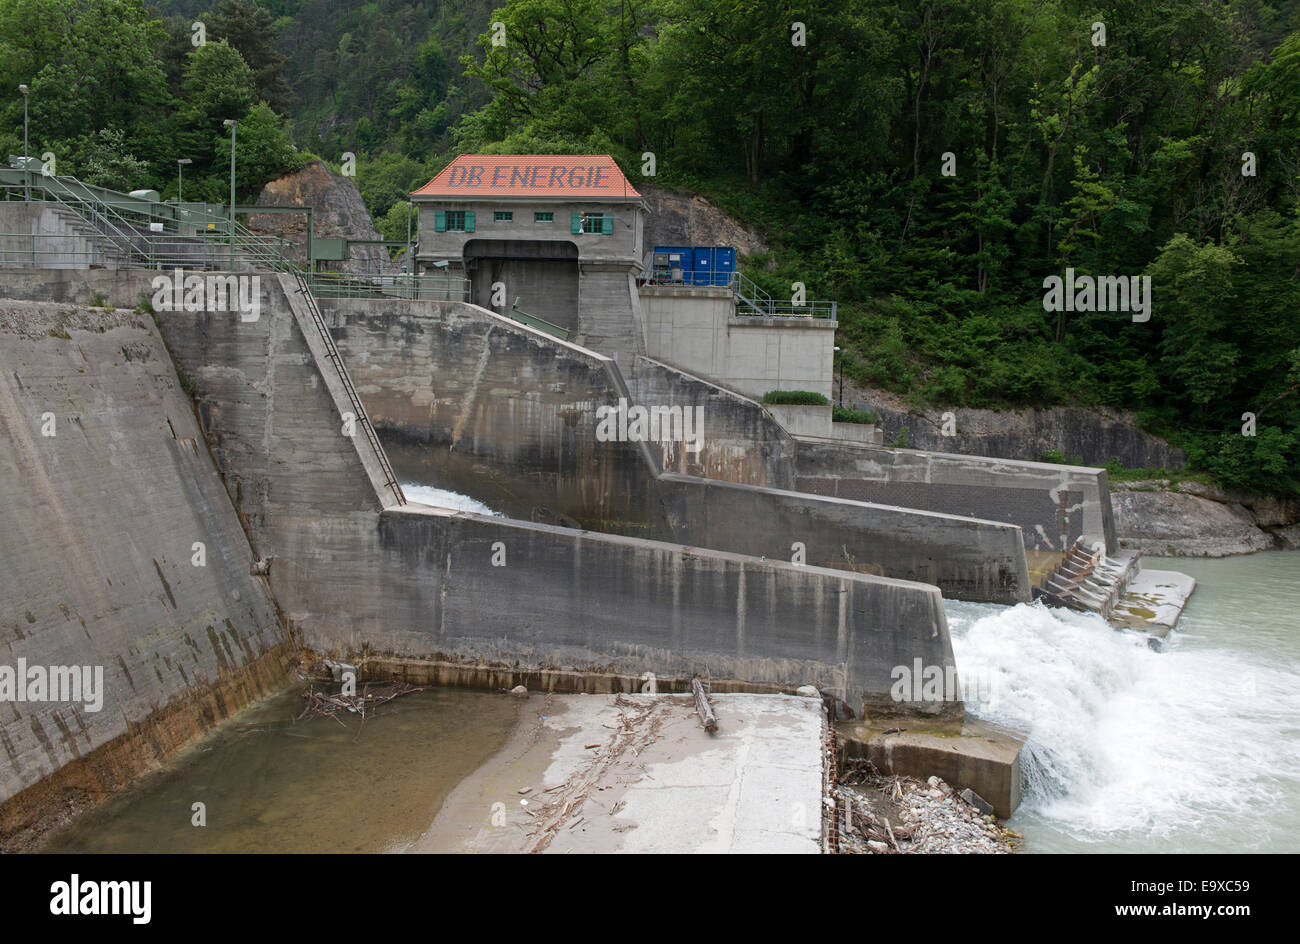 DB Energie central hidroeléctrica en el río Saalach, Baviera, Alemania. Foto de stock